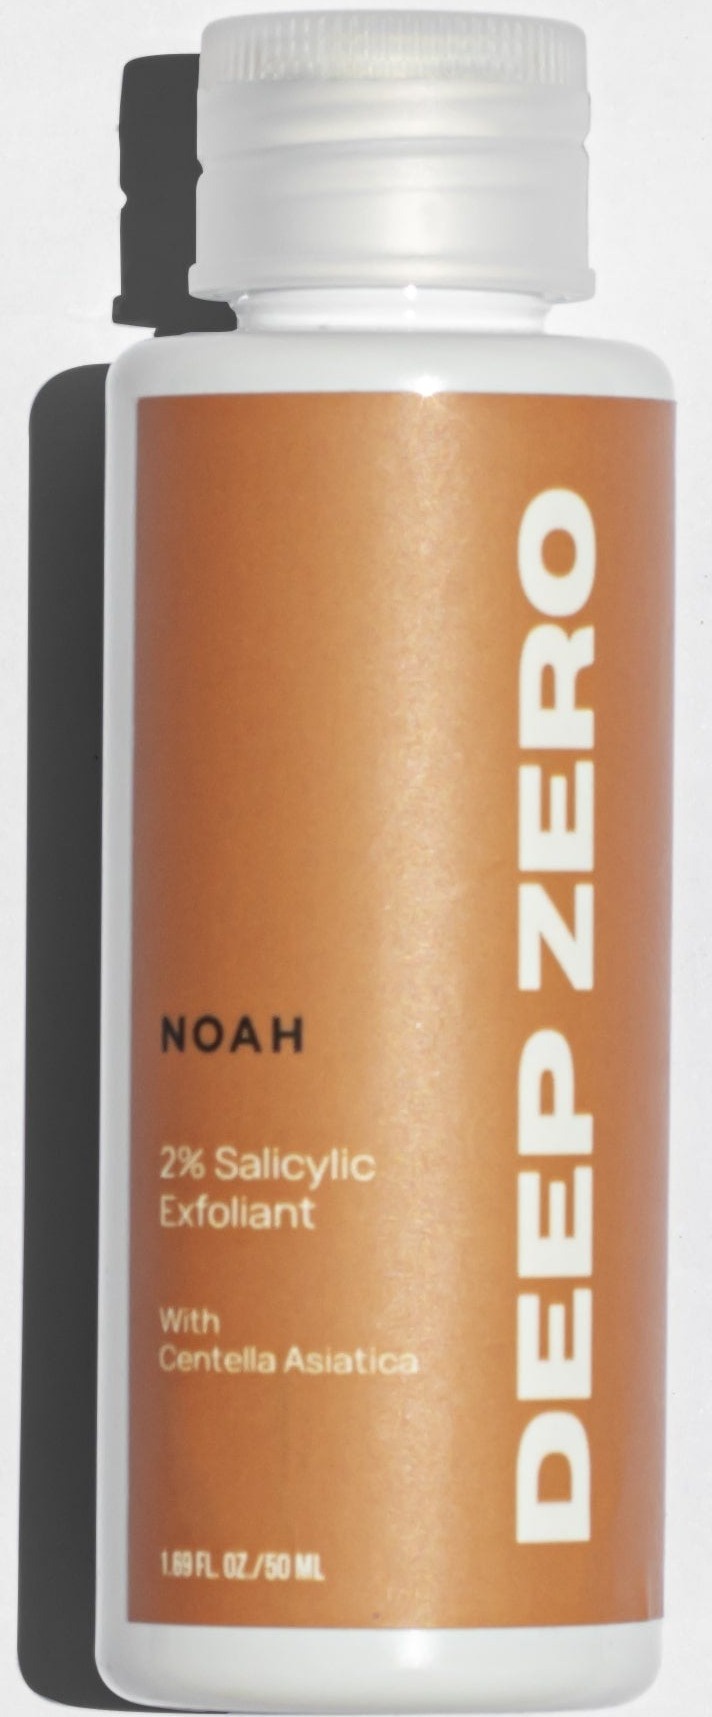 NOAH Deep Zero 2% Salicylic Exfoliant With Centella Asiatica